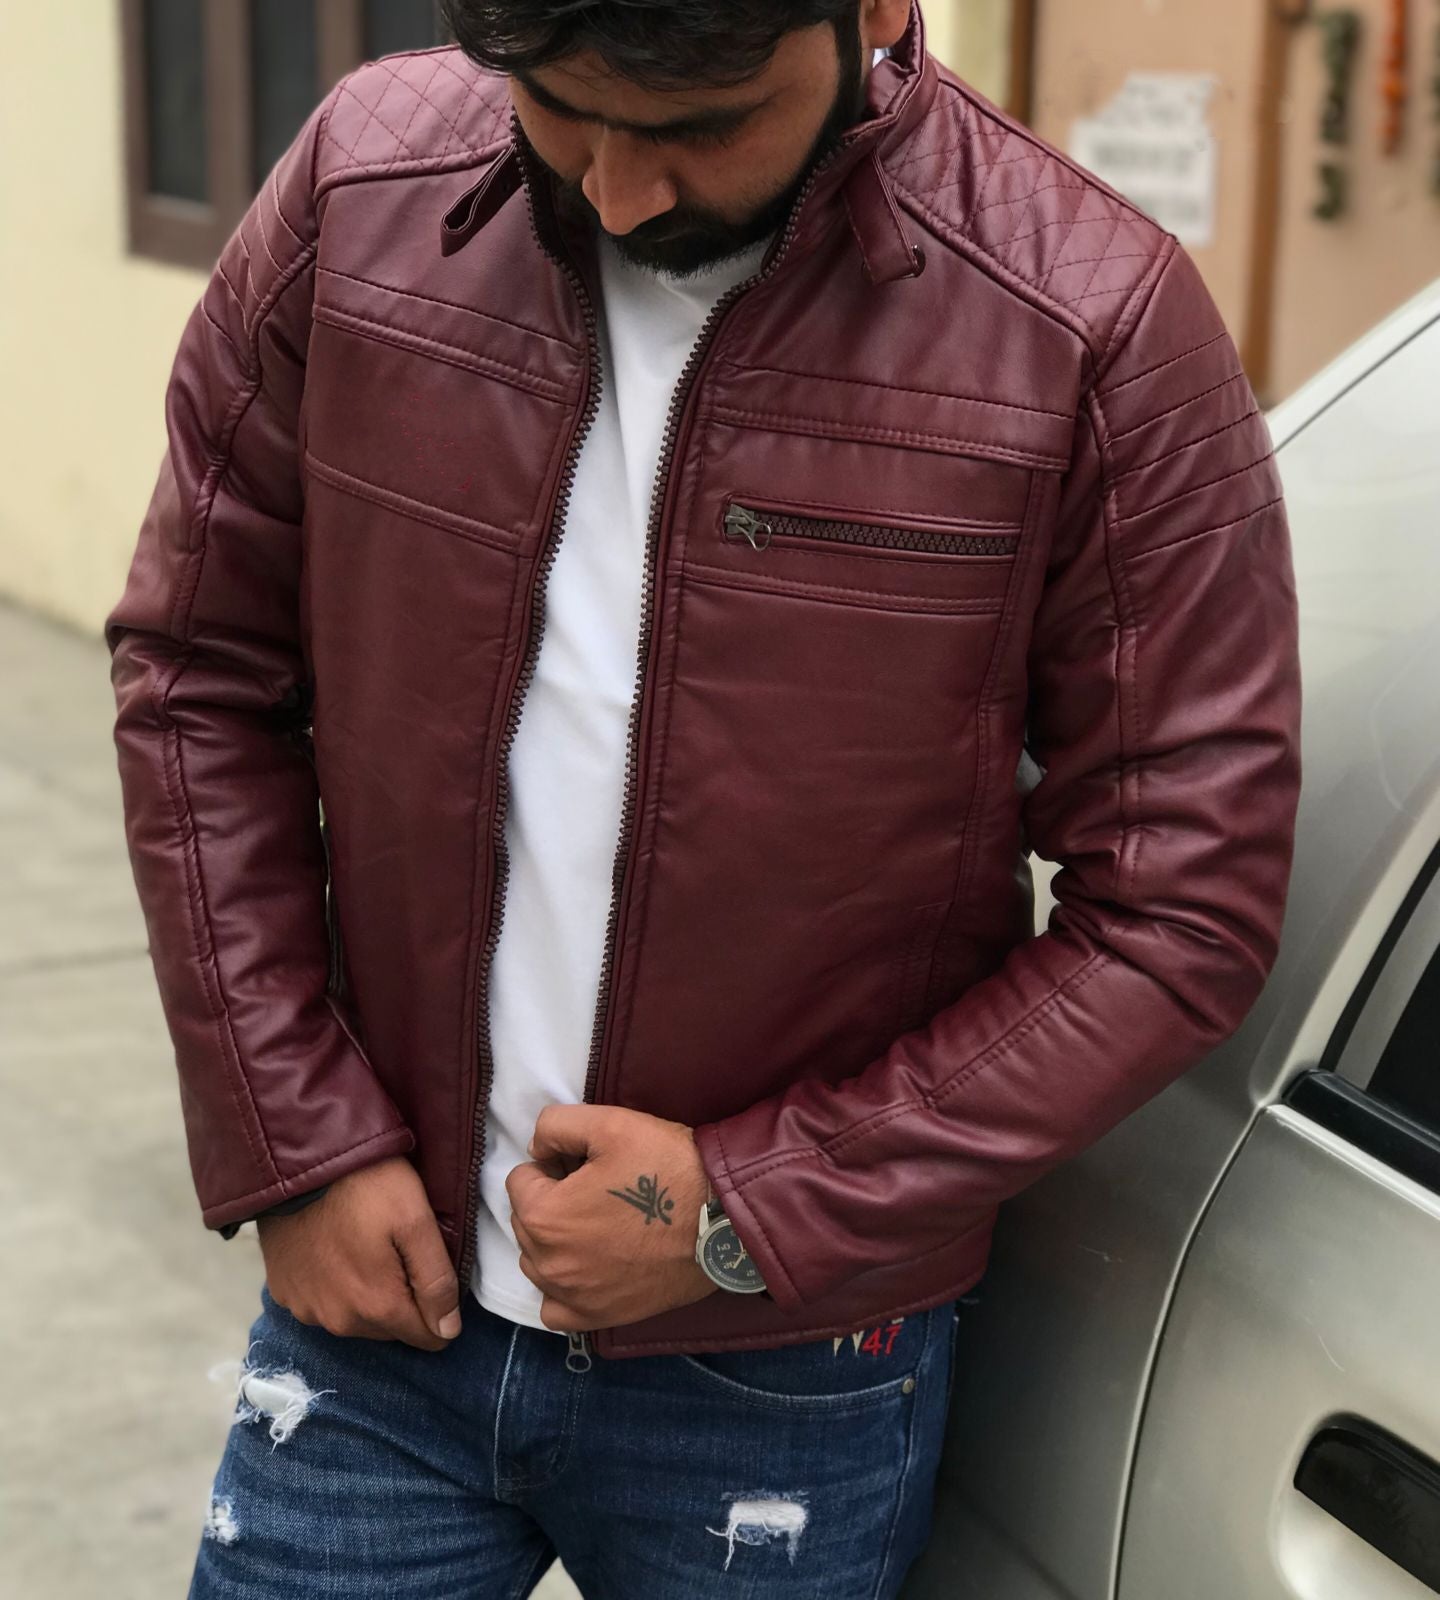 Men’s Winter Leather Jacket With Warm Furr Inside - Wine